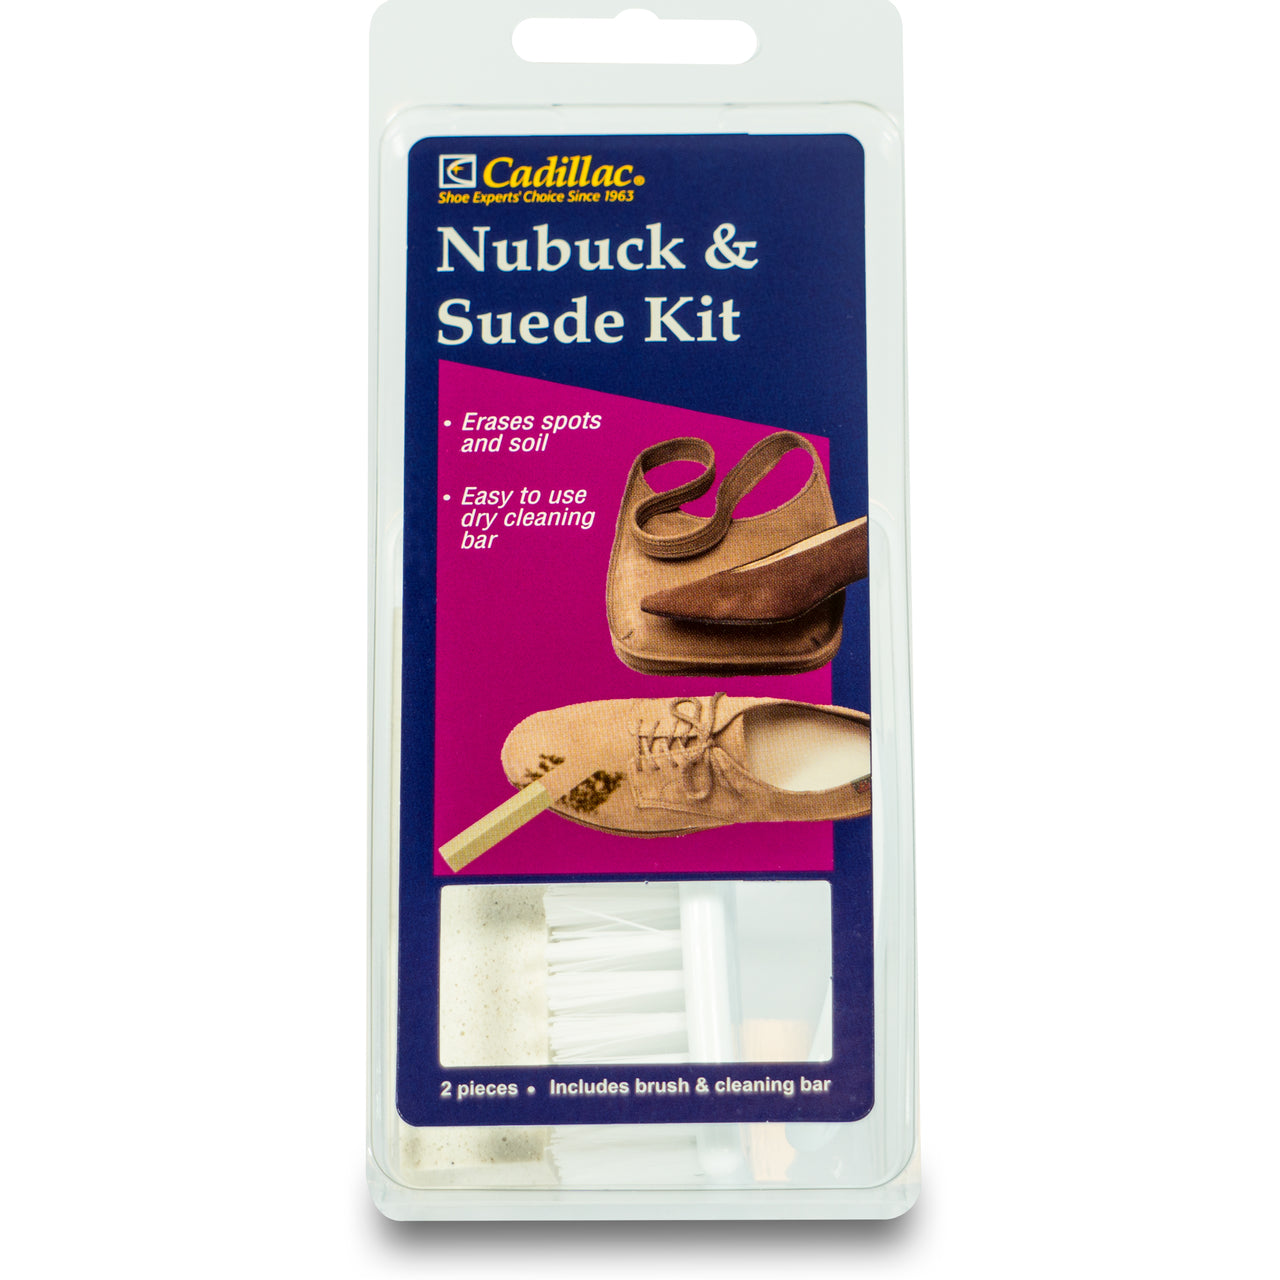 Nubuck & Suede Cleaner Kit